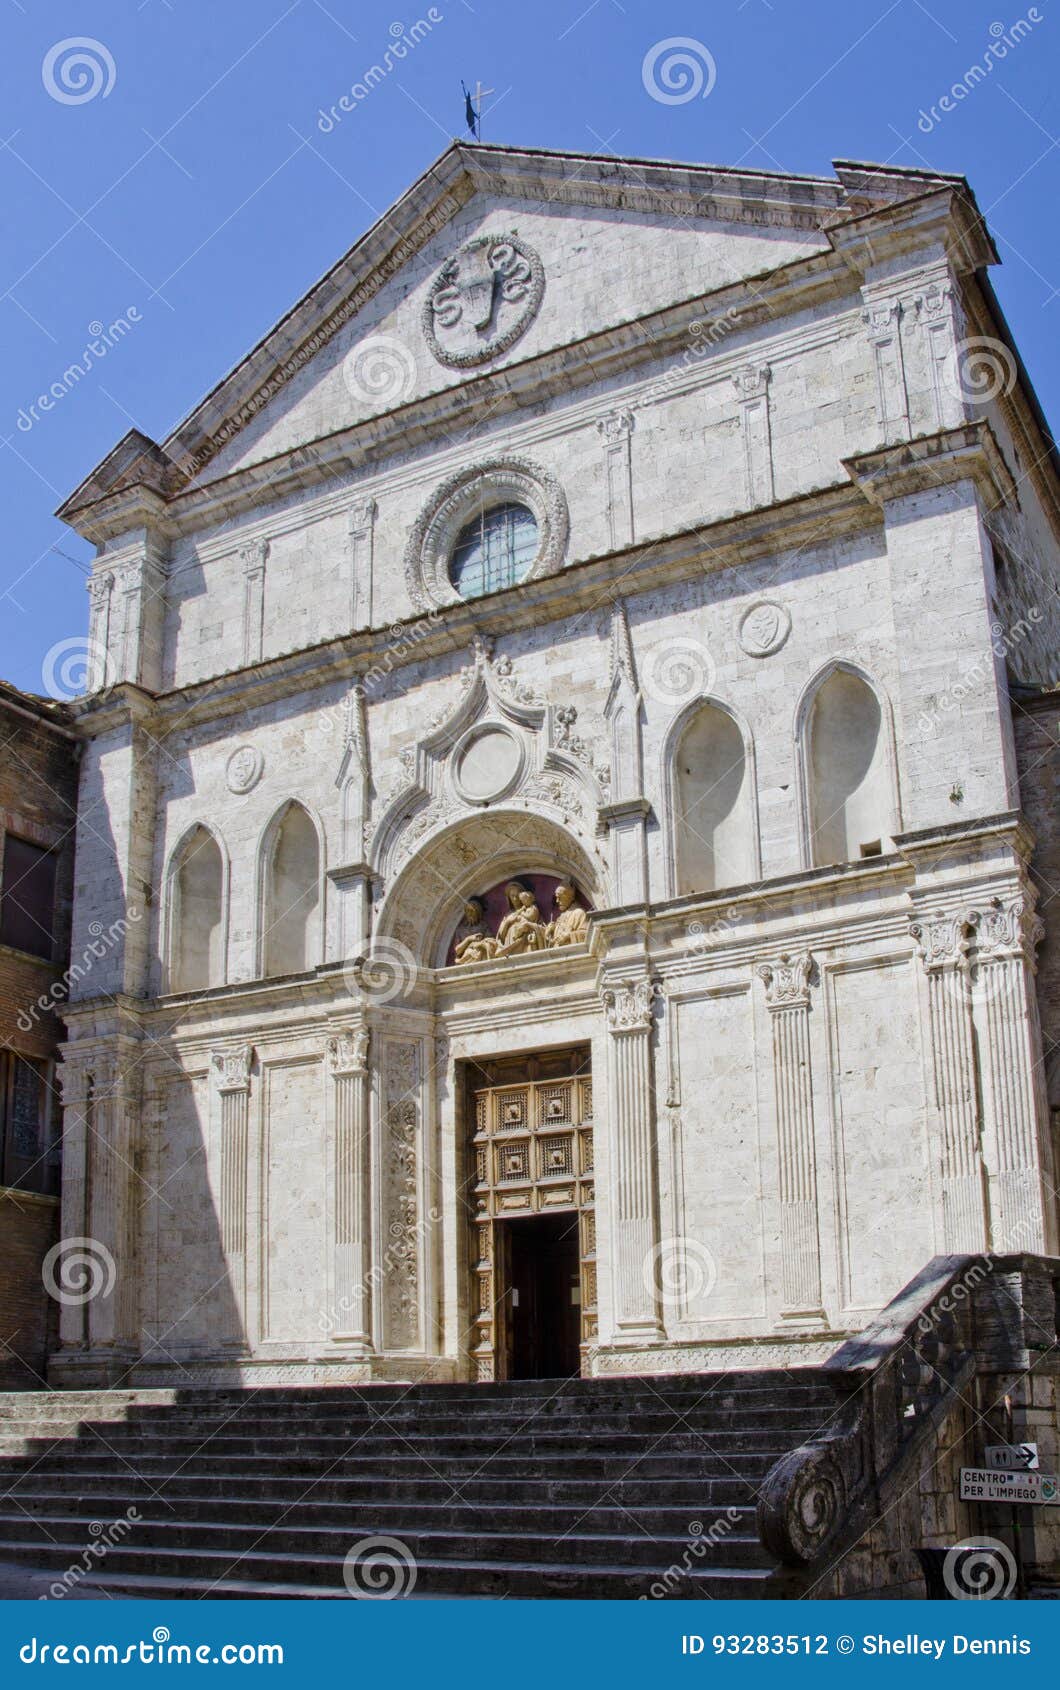 chiesa di sant agostino in montepulciano, italy